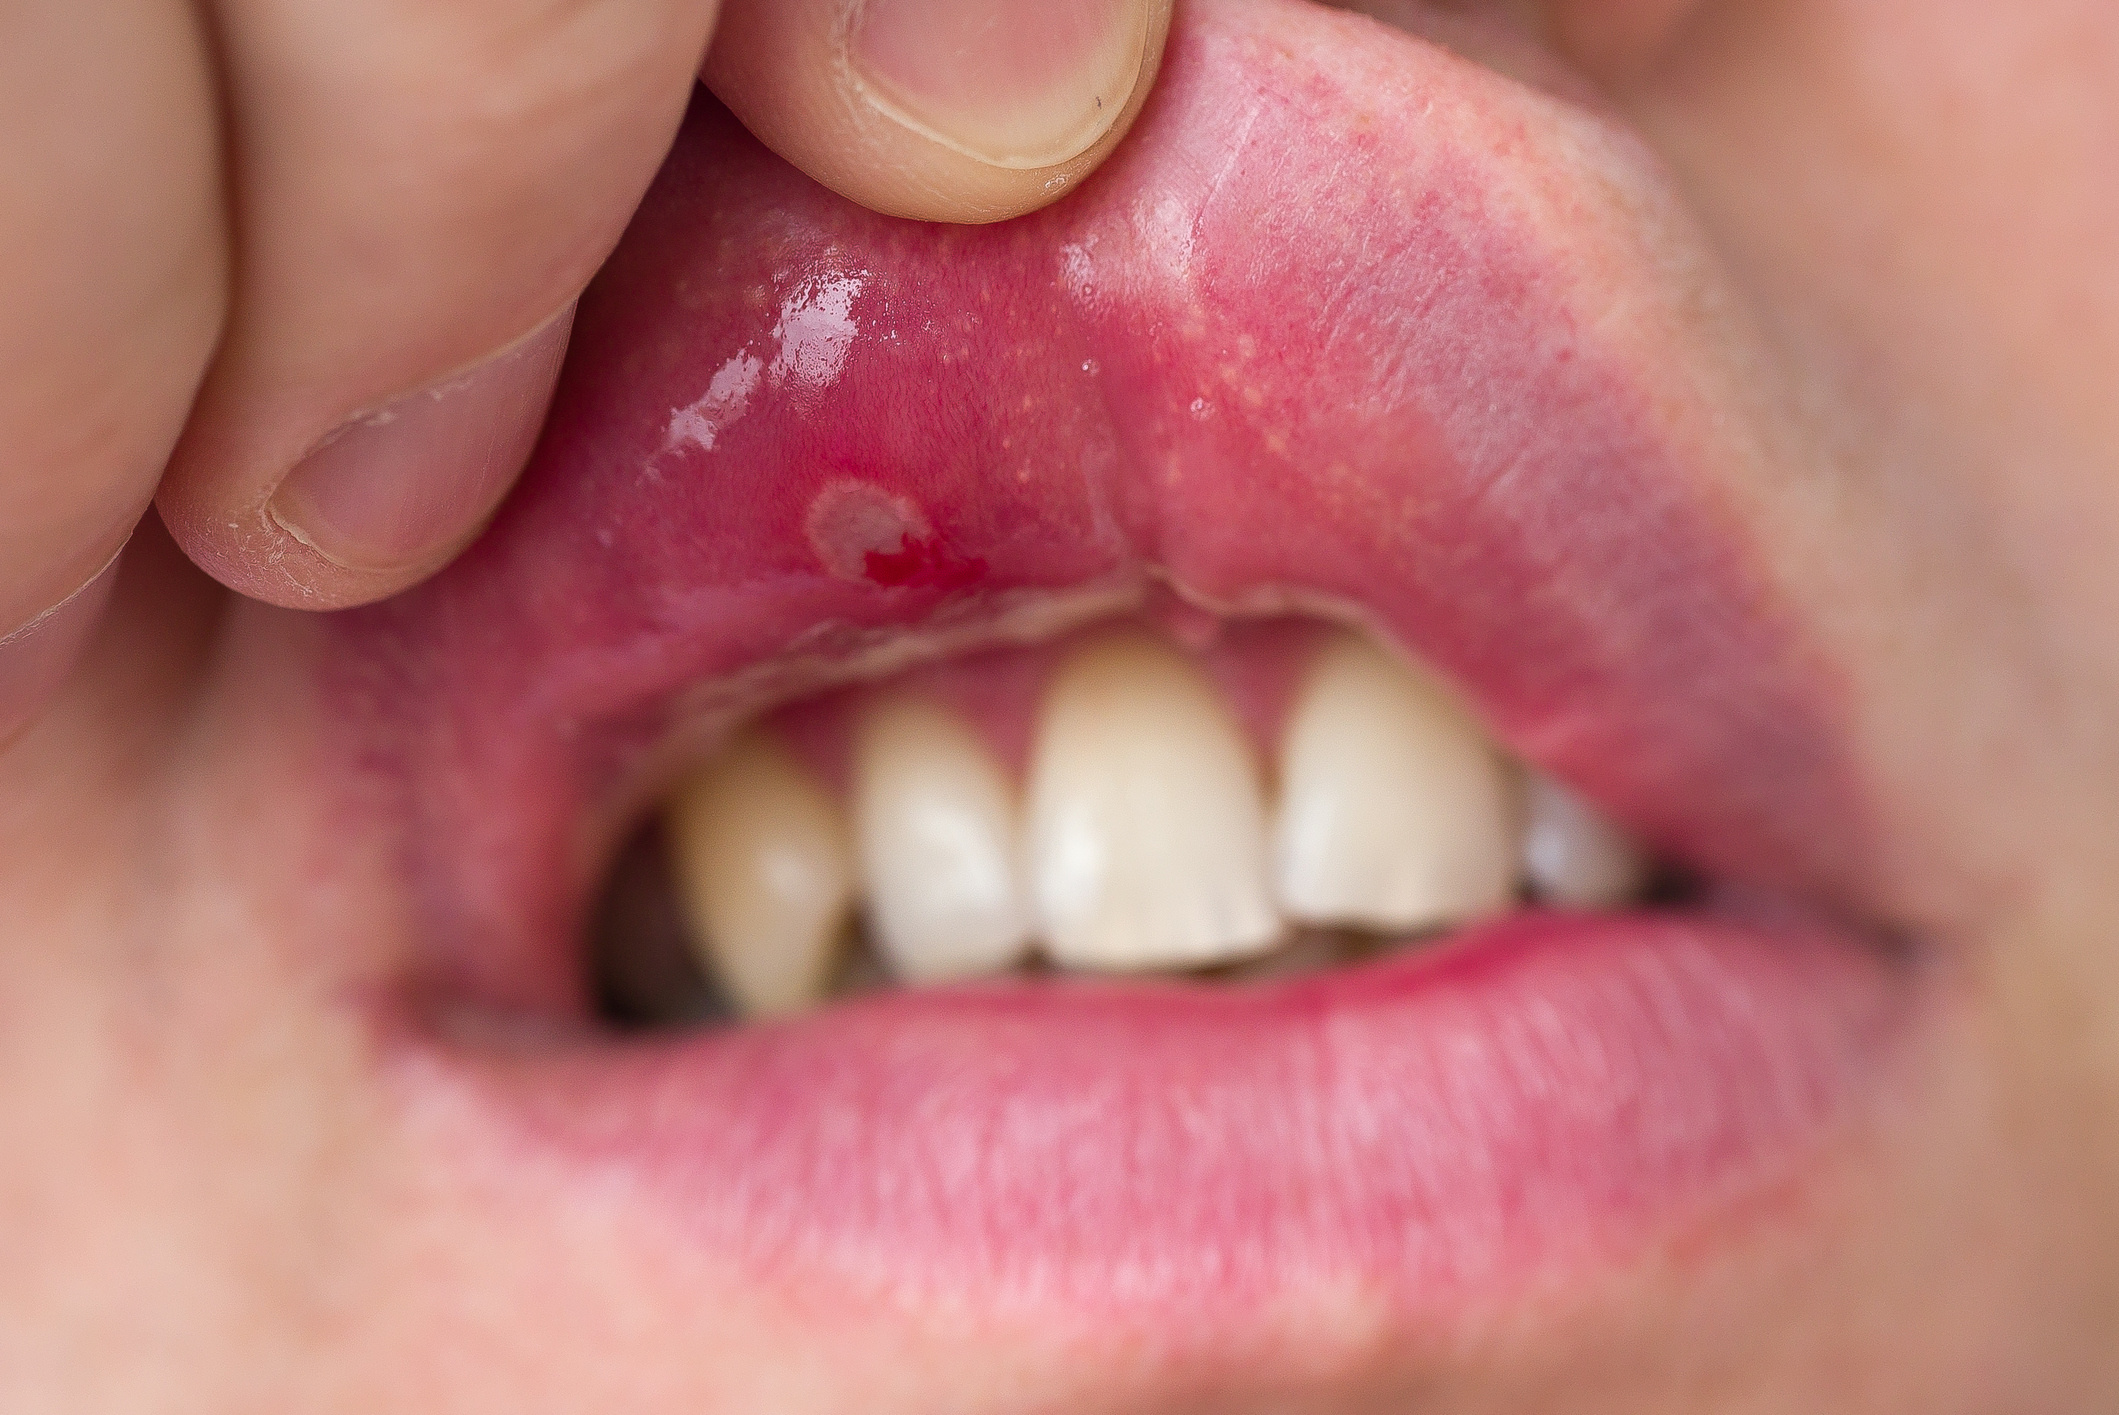 a condyloma jelei a szájban lapos szemölcsök és endofiták